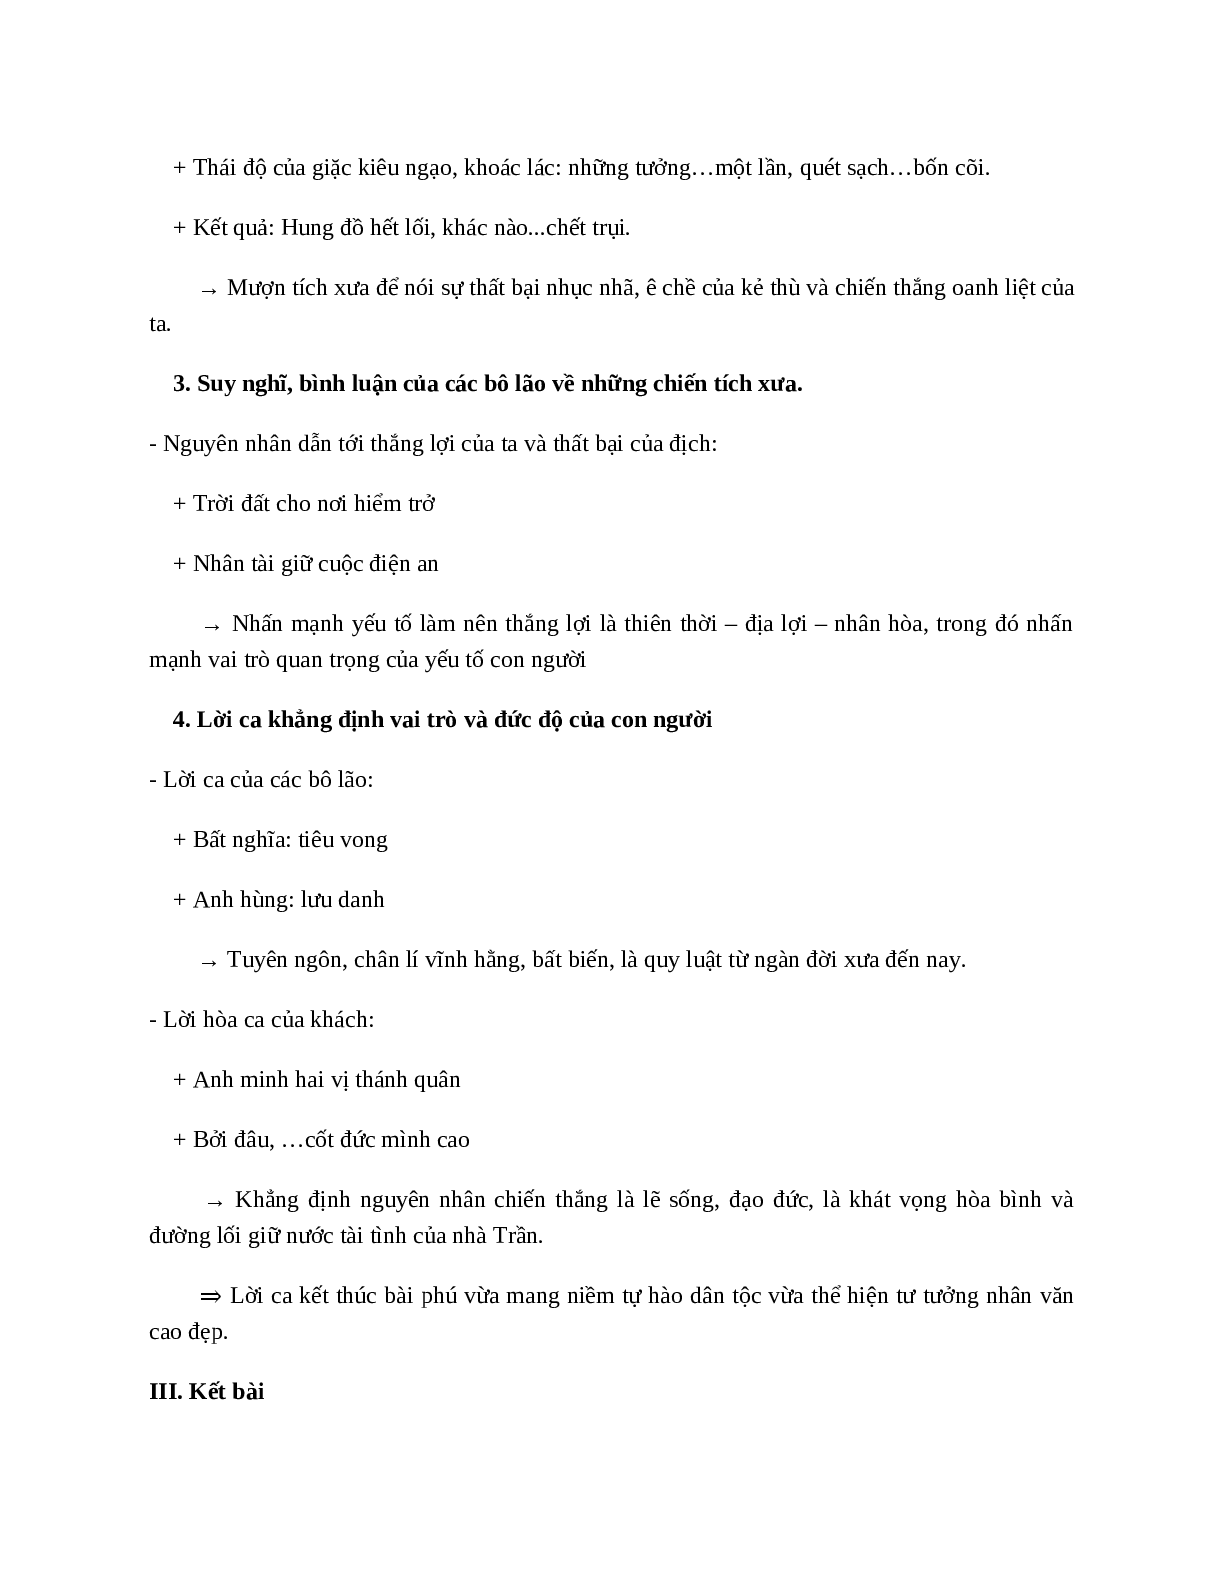 Phú sông Bạch Đằng (Trương Hán Siêu) - nội dung, dàn ý phân tích, bố cục, tóm tắt (trang 10)